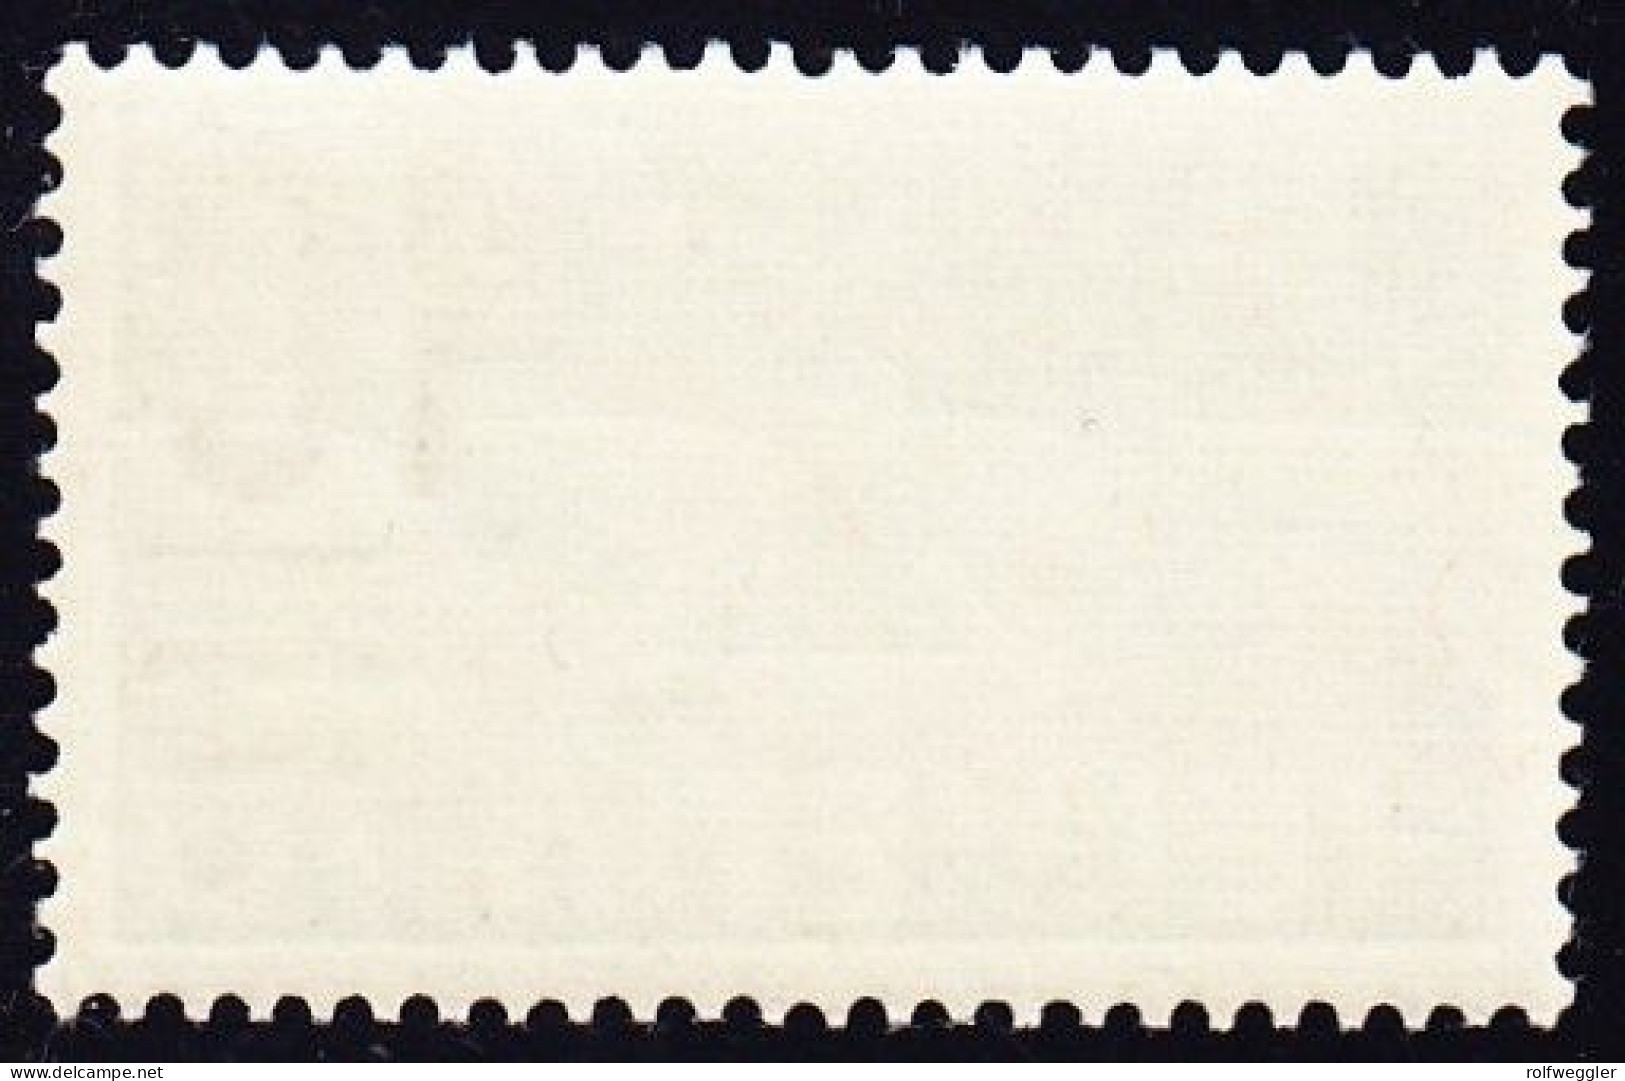 1935 10 Auf 15 Rp. Postfrische Marke, Stark Verschobener Aufdruck (4 Mm Nach Oben) KAT 20.1A.11 - Unused Stamps